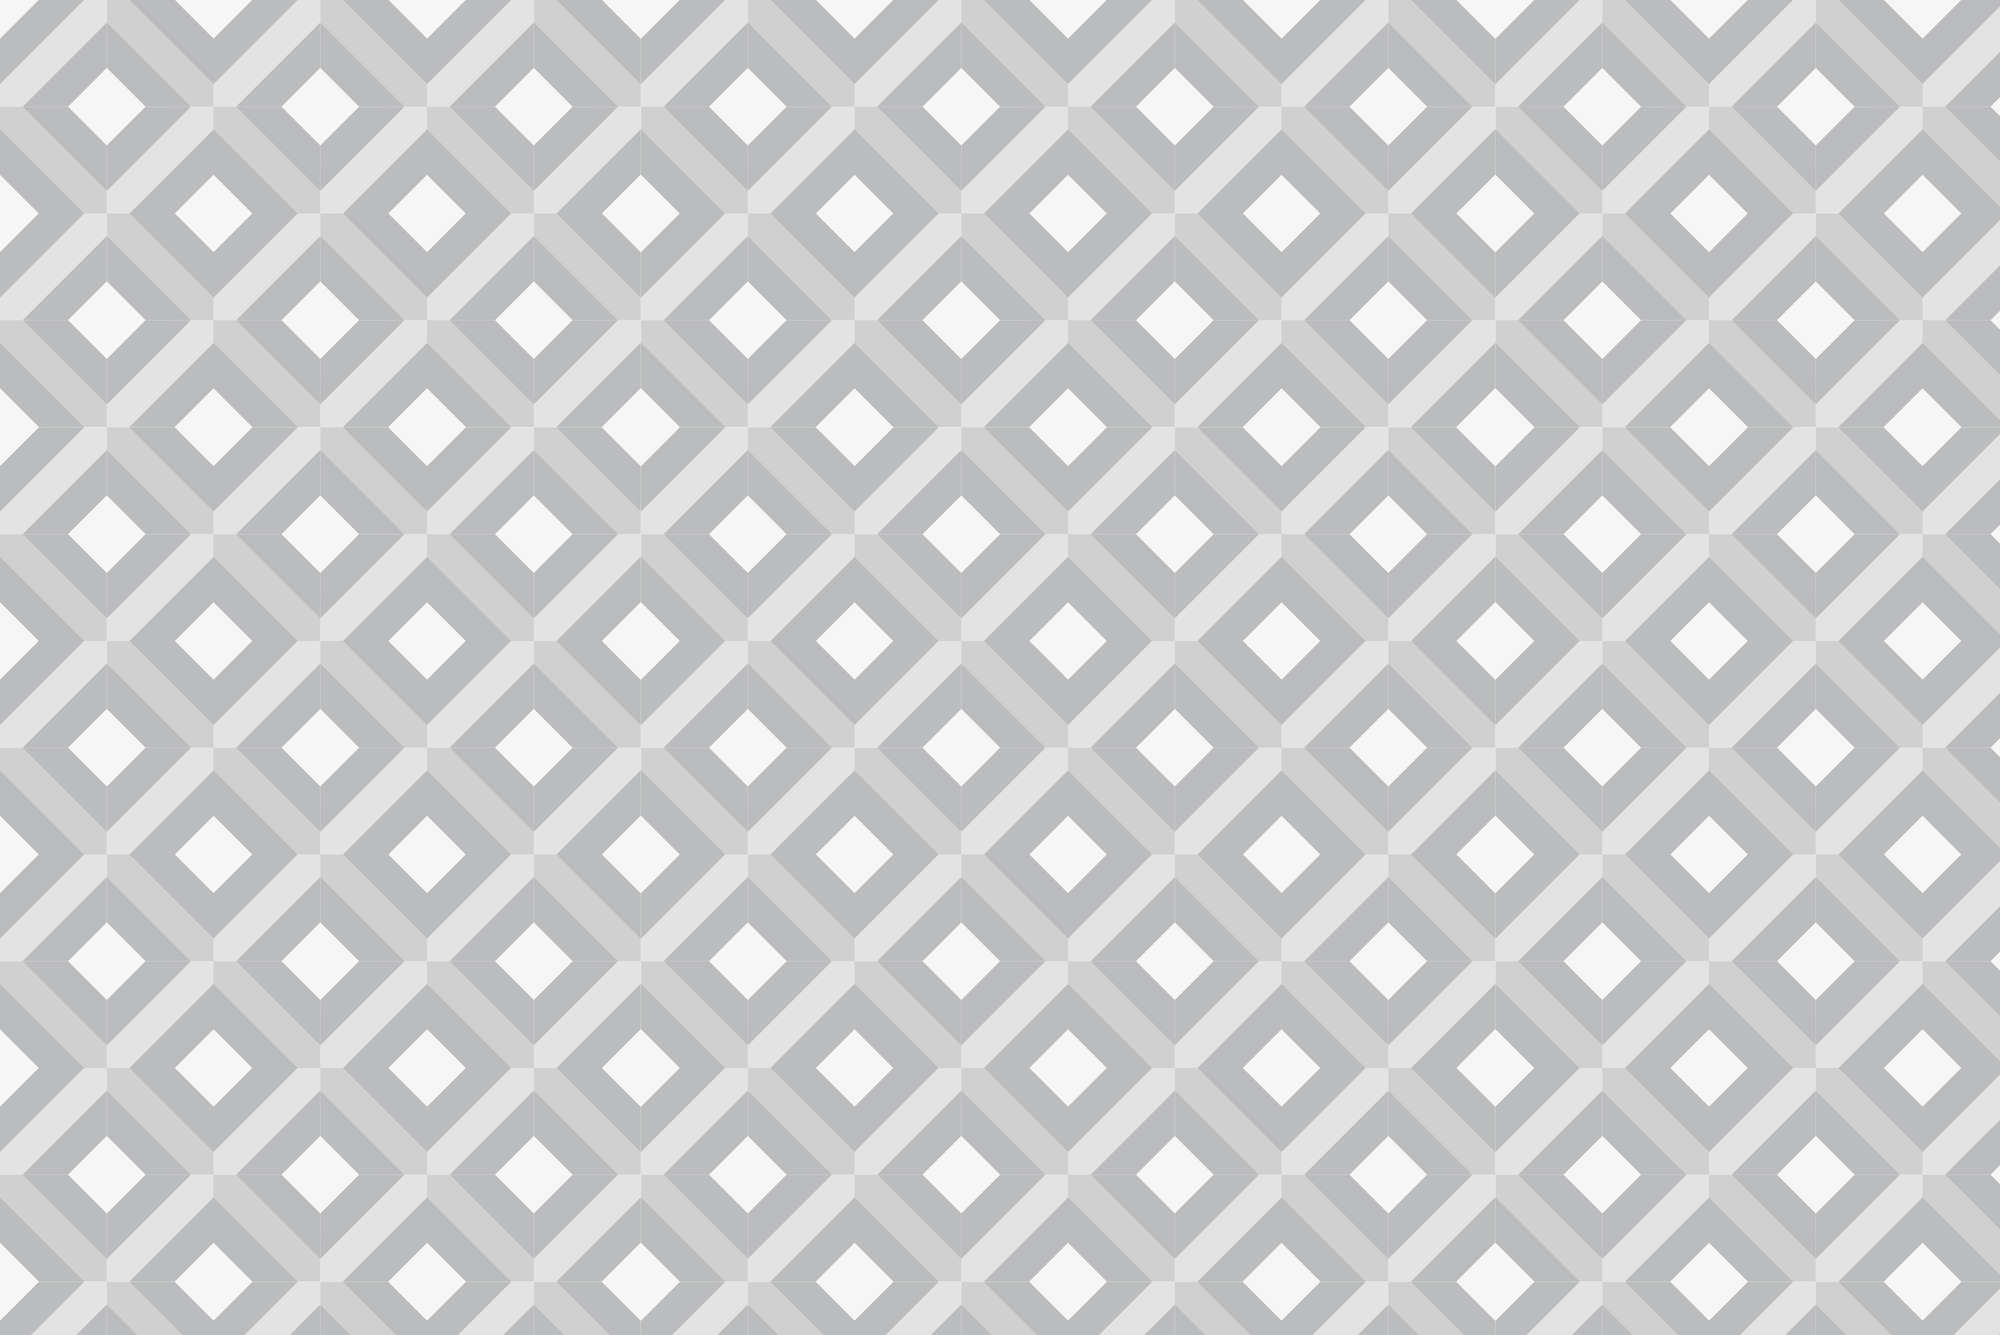             Design Fototapete Kästchen Motiv mit kleinen Quadraten grau auf Matt Glattvlies
        